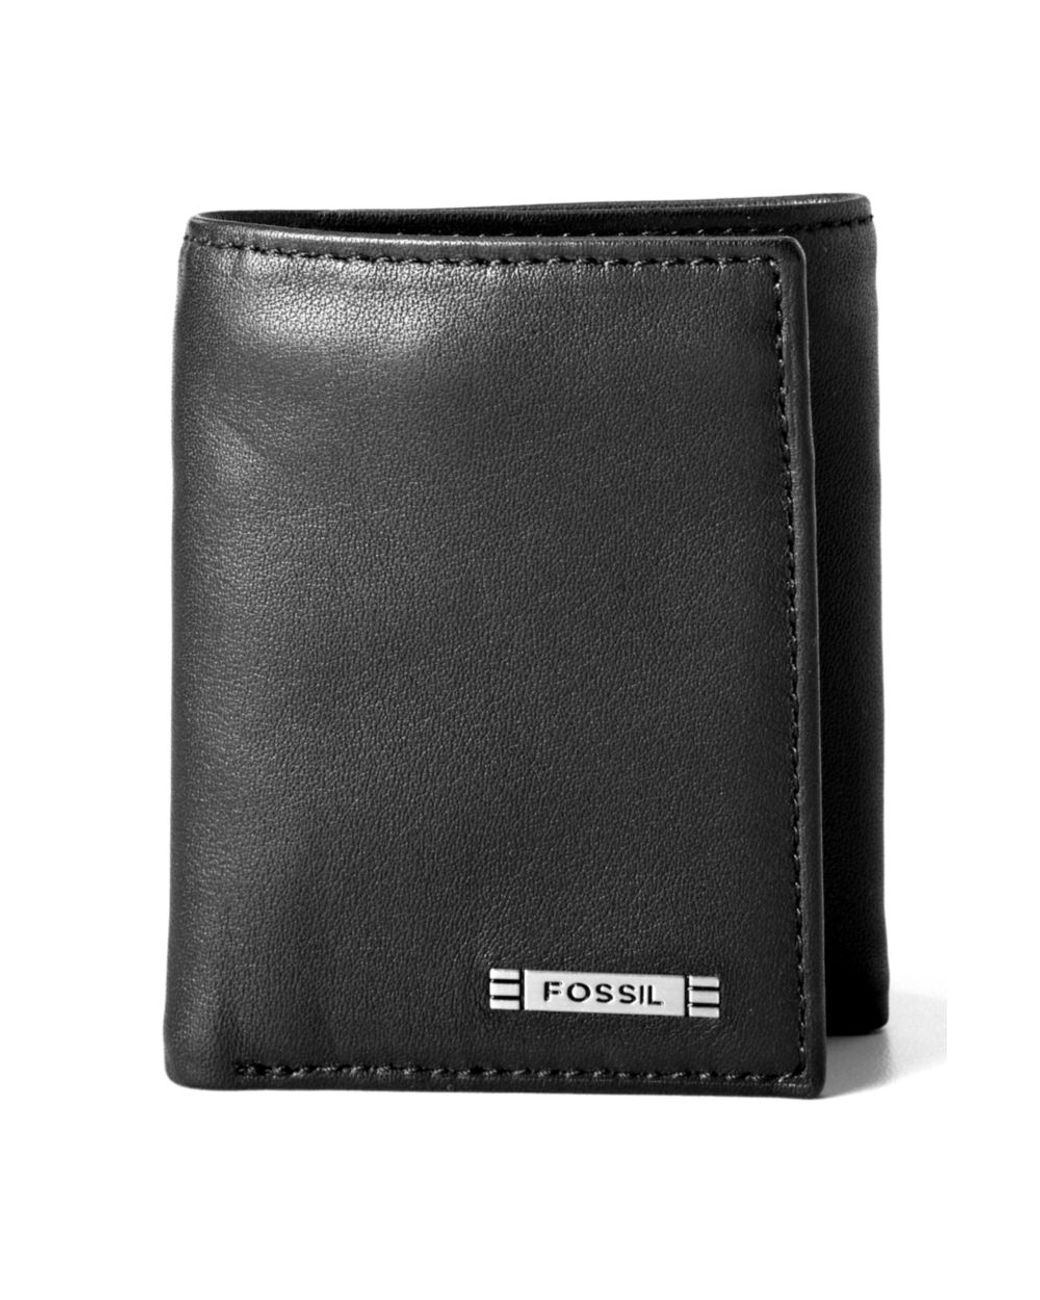 Black Wallets for Men - Macy's